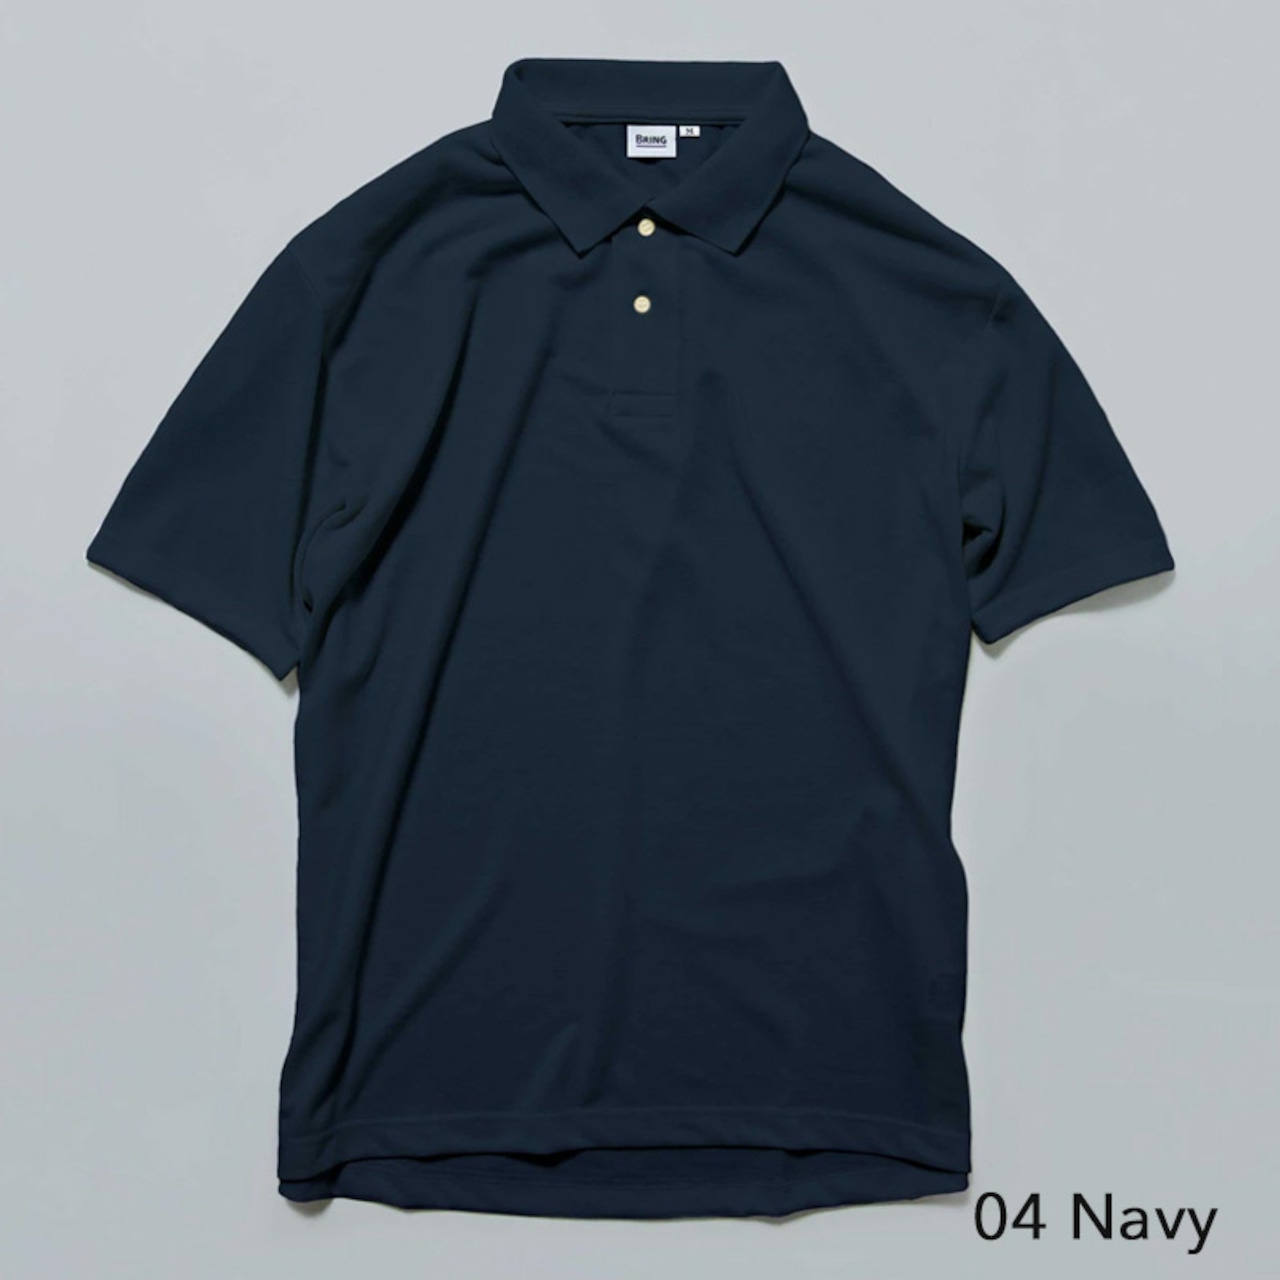 BRING(ブリング) DRYCOTTONY Polo Shirt ポロシャツ 半袖 ユニセックス アウトドア 用品 キャンプ グッズ